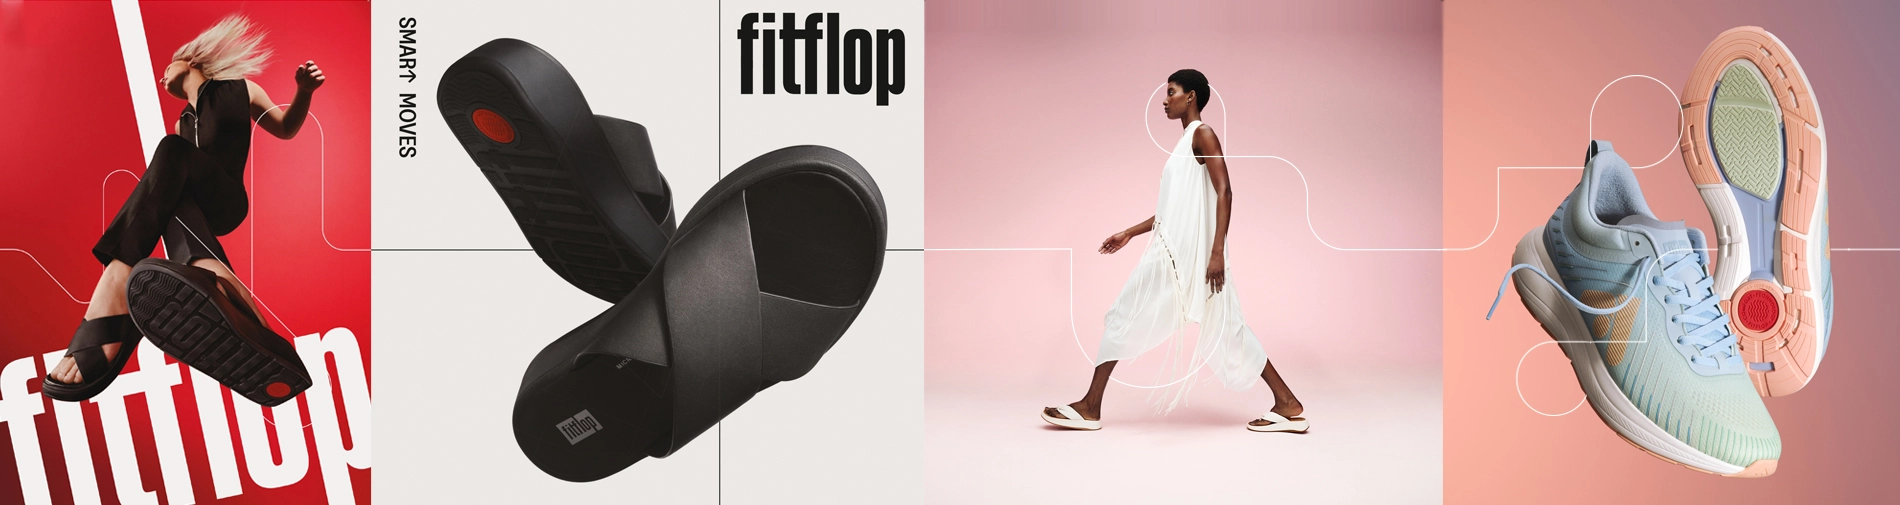 Shop de nieuwe FitFlop collectie